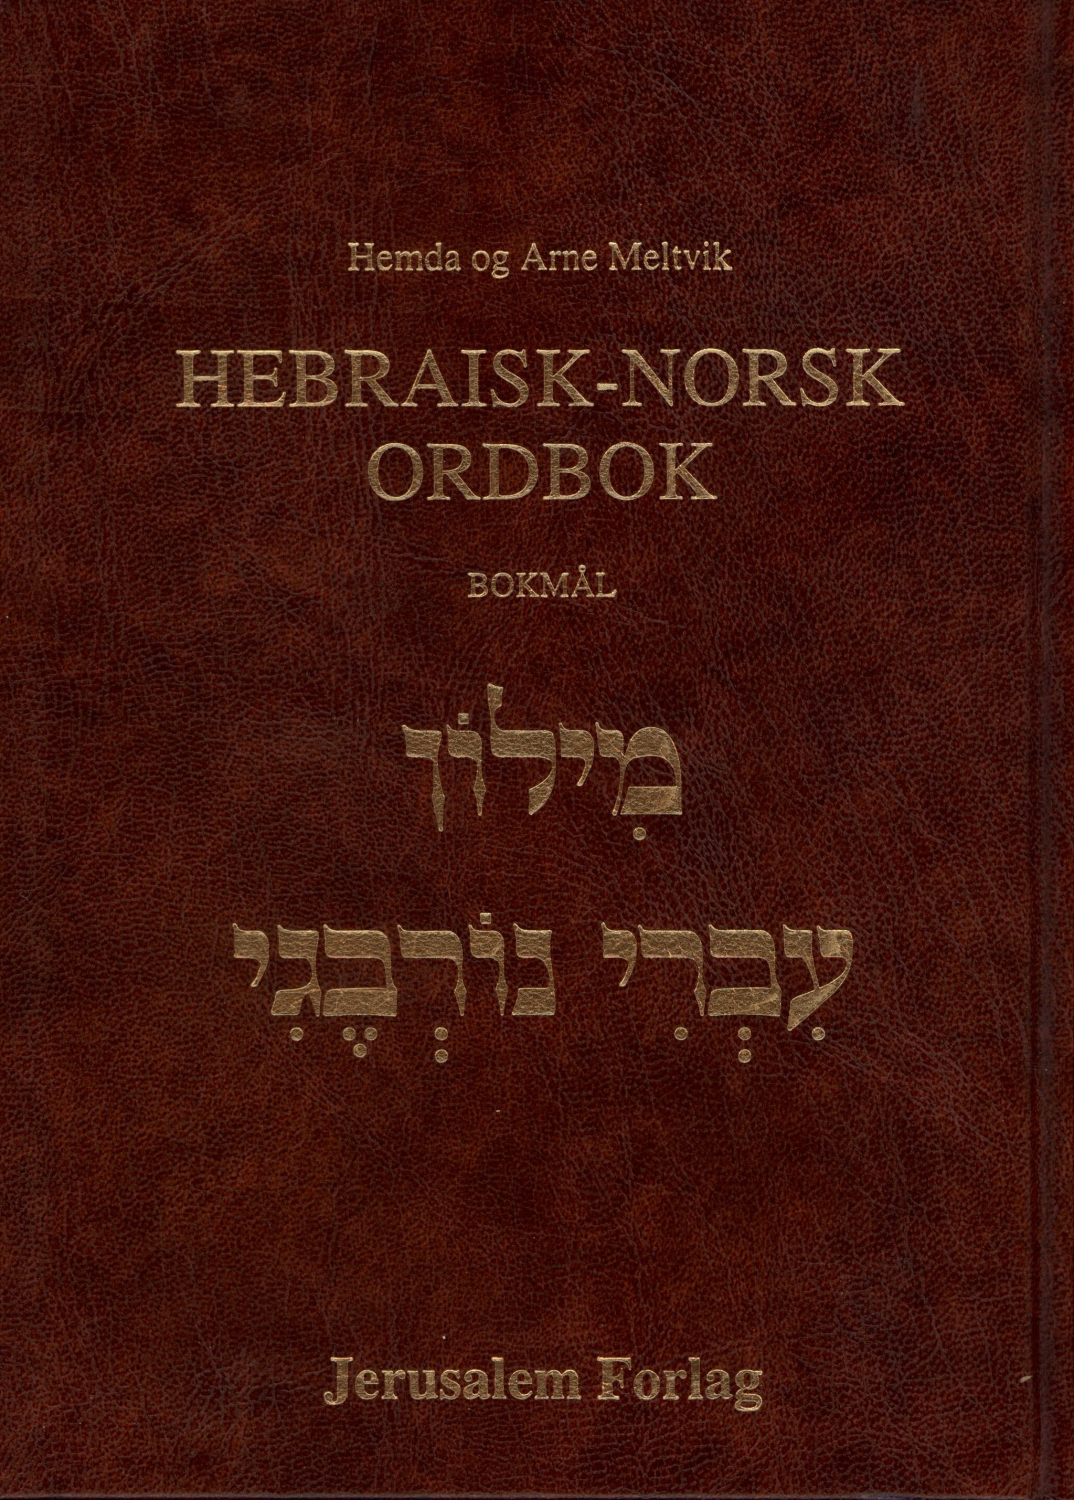 Hebraisk-Norsk ordbok, 12 000 oppslagsord